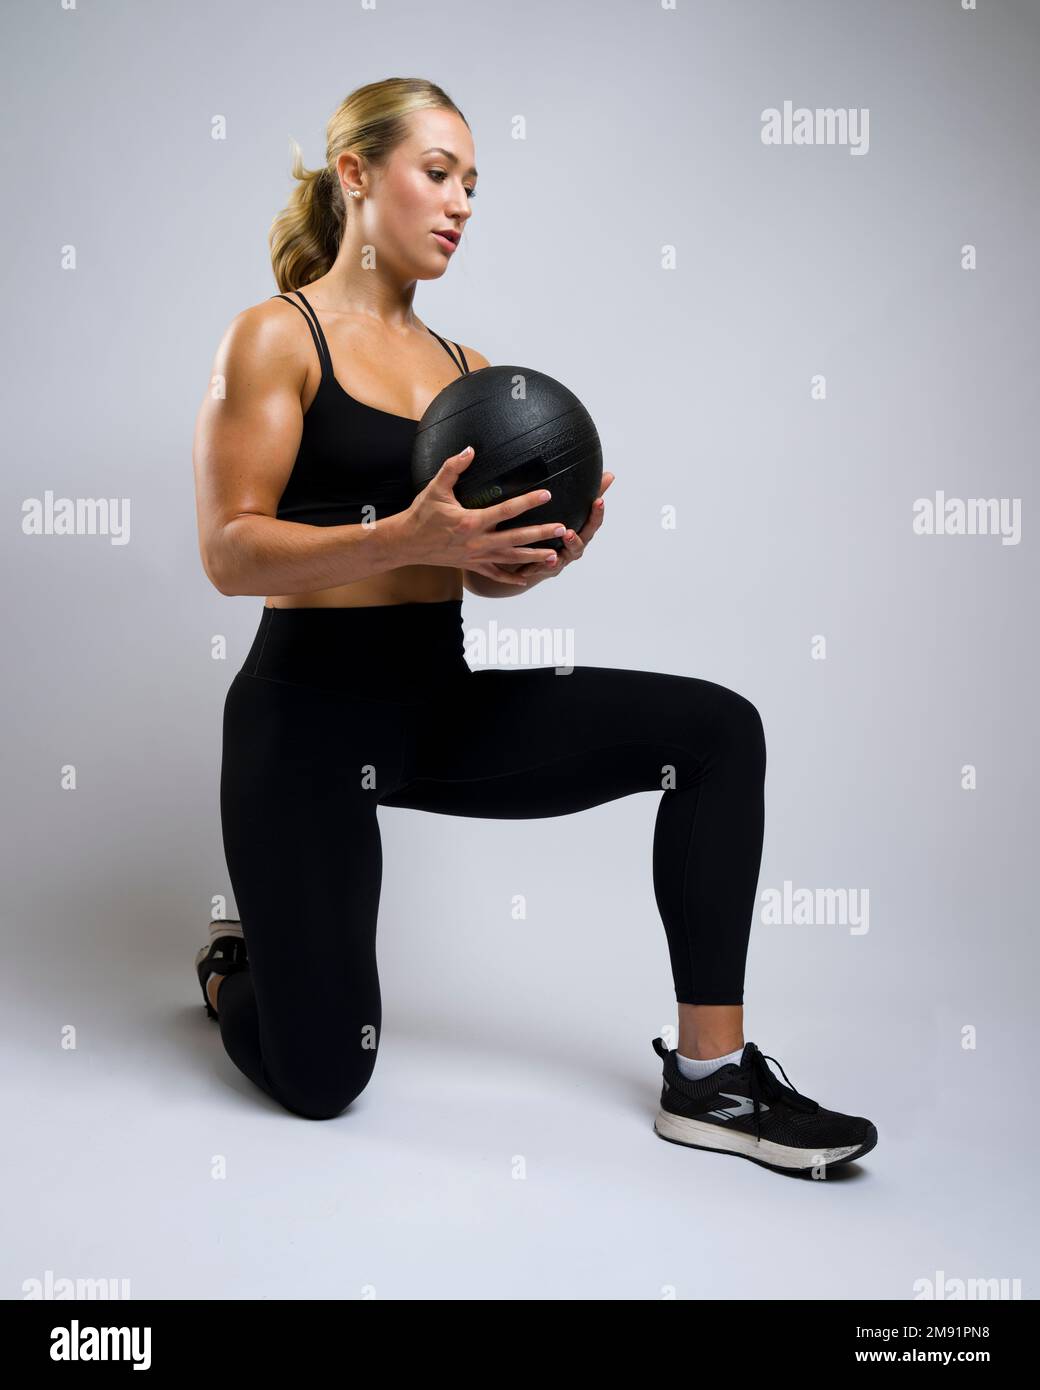 Retrato de la mujer joven musculosa hermosa arrodillada con la bola de la medicina Foto de stock